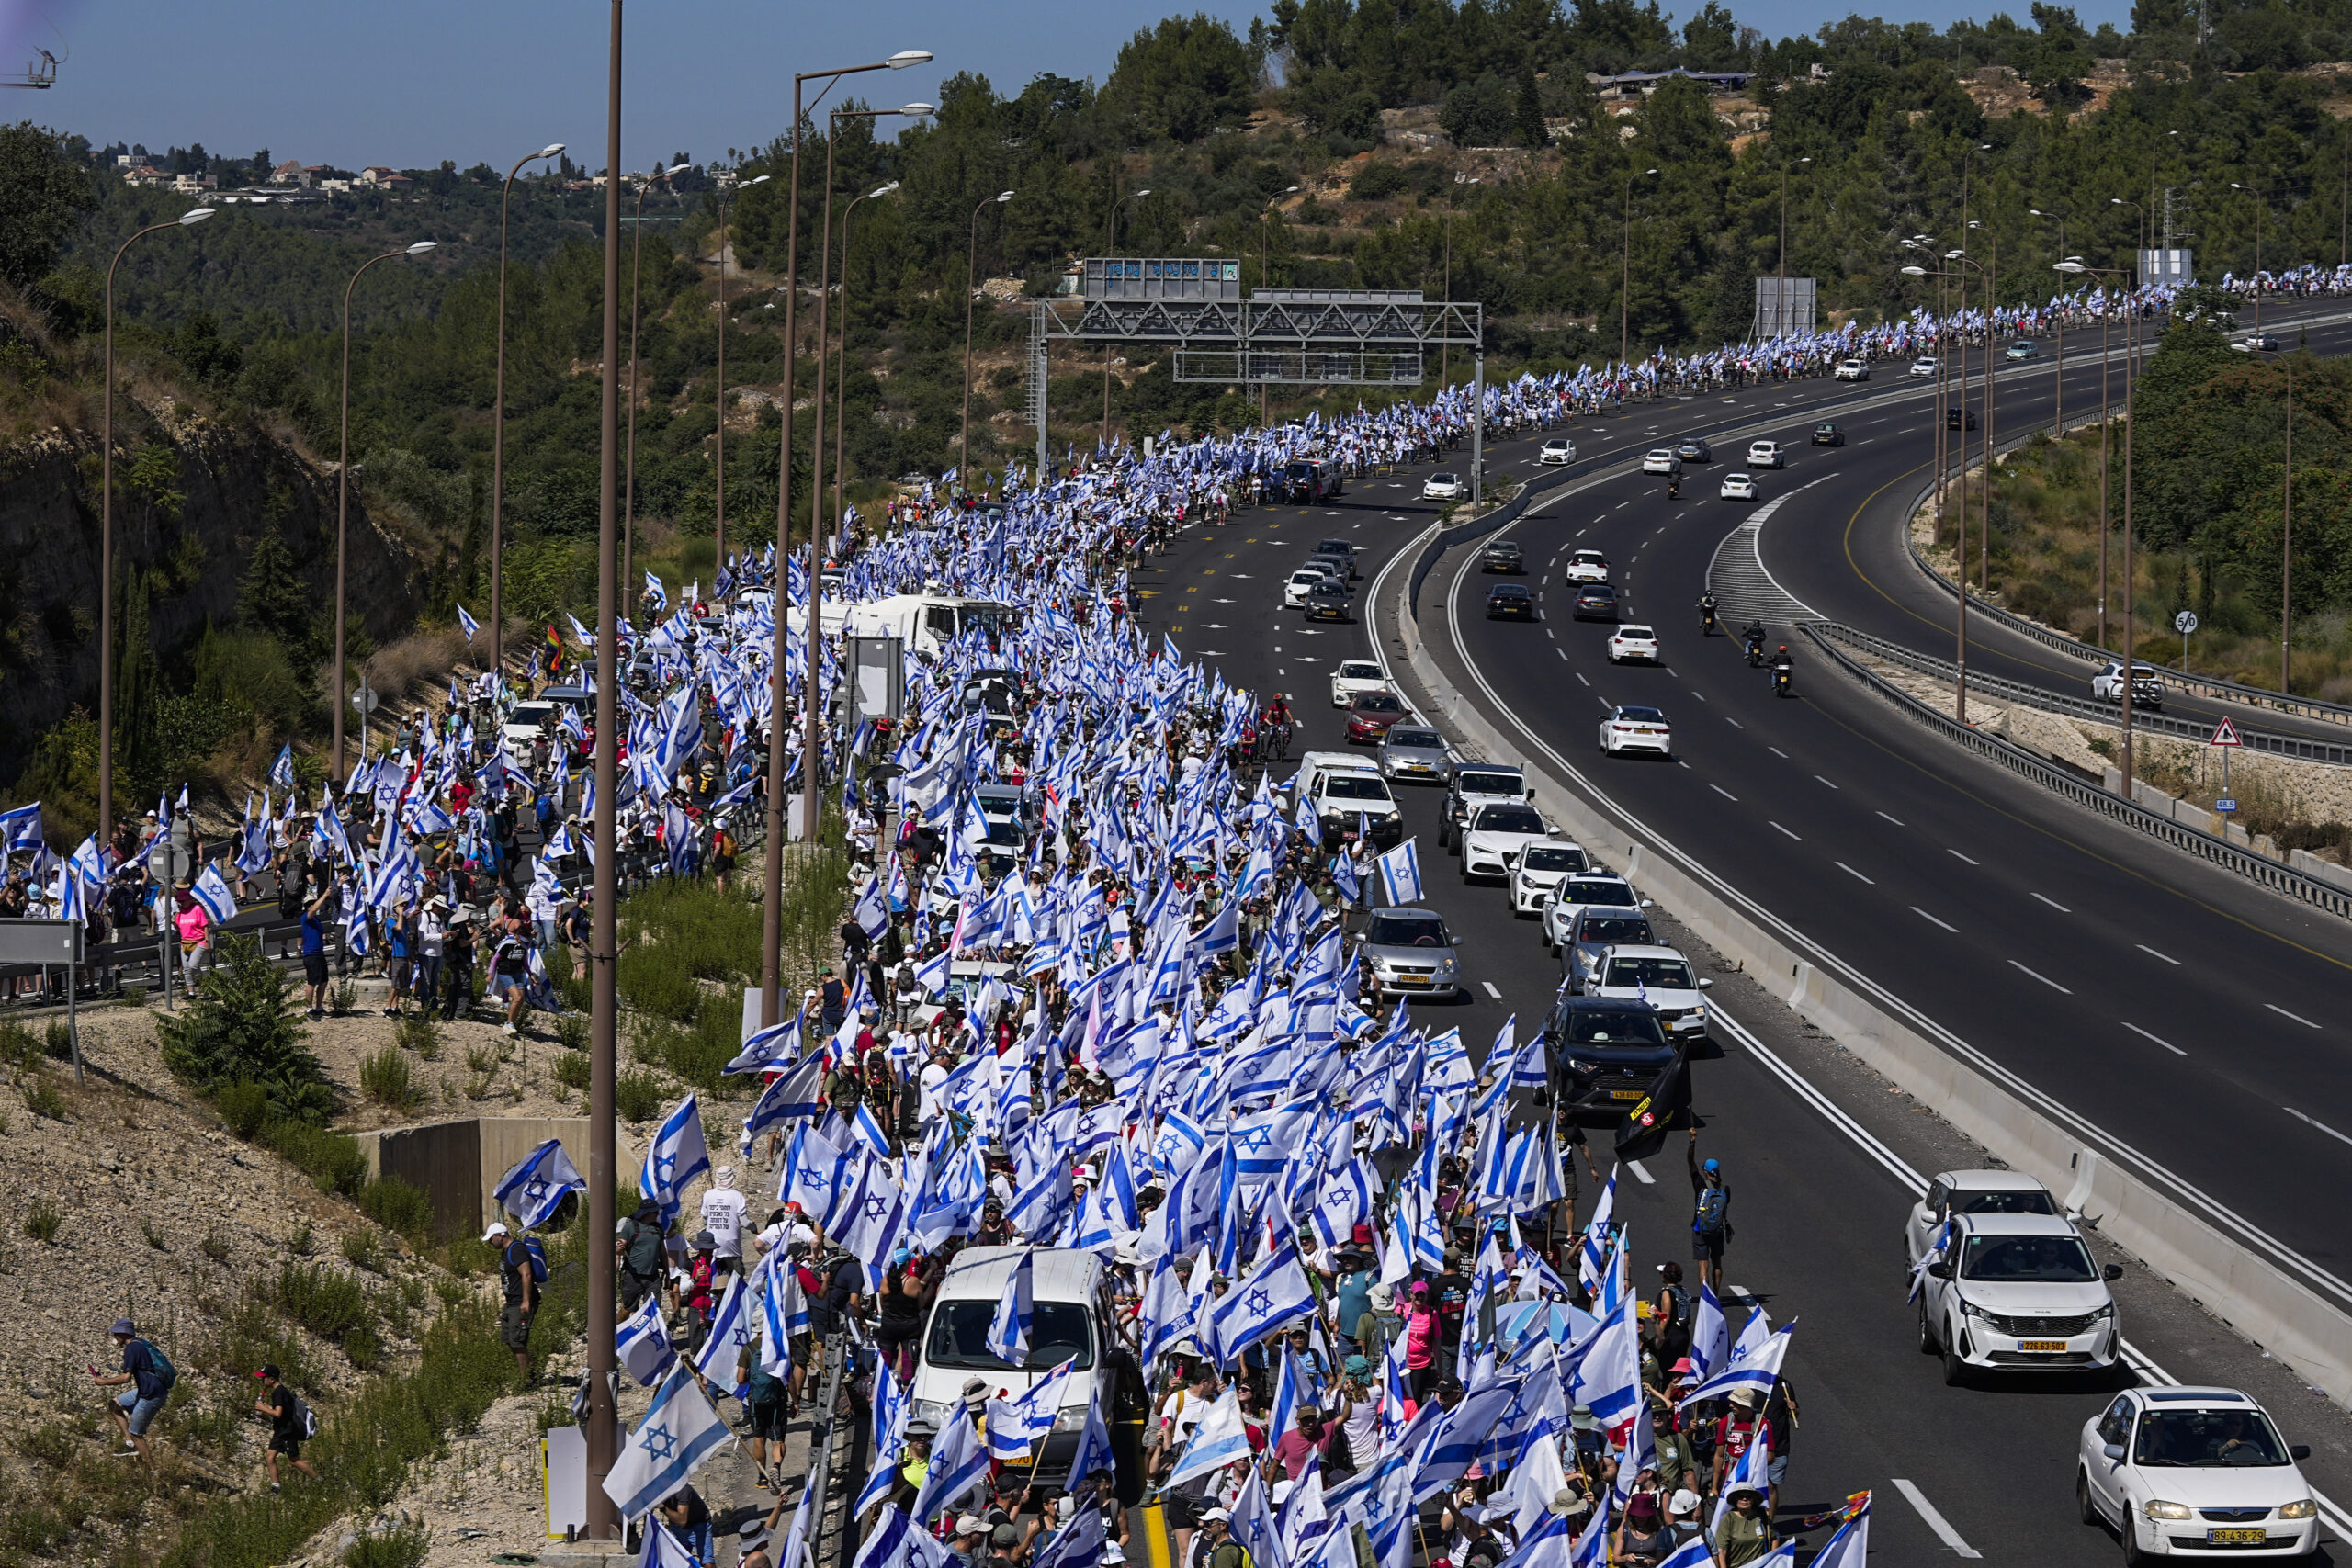 Israel-Fahnen werden von Demonstrierenden über die Autobahn getragen.